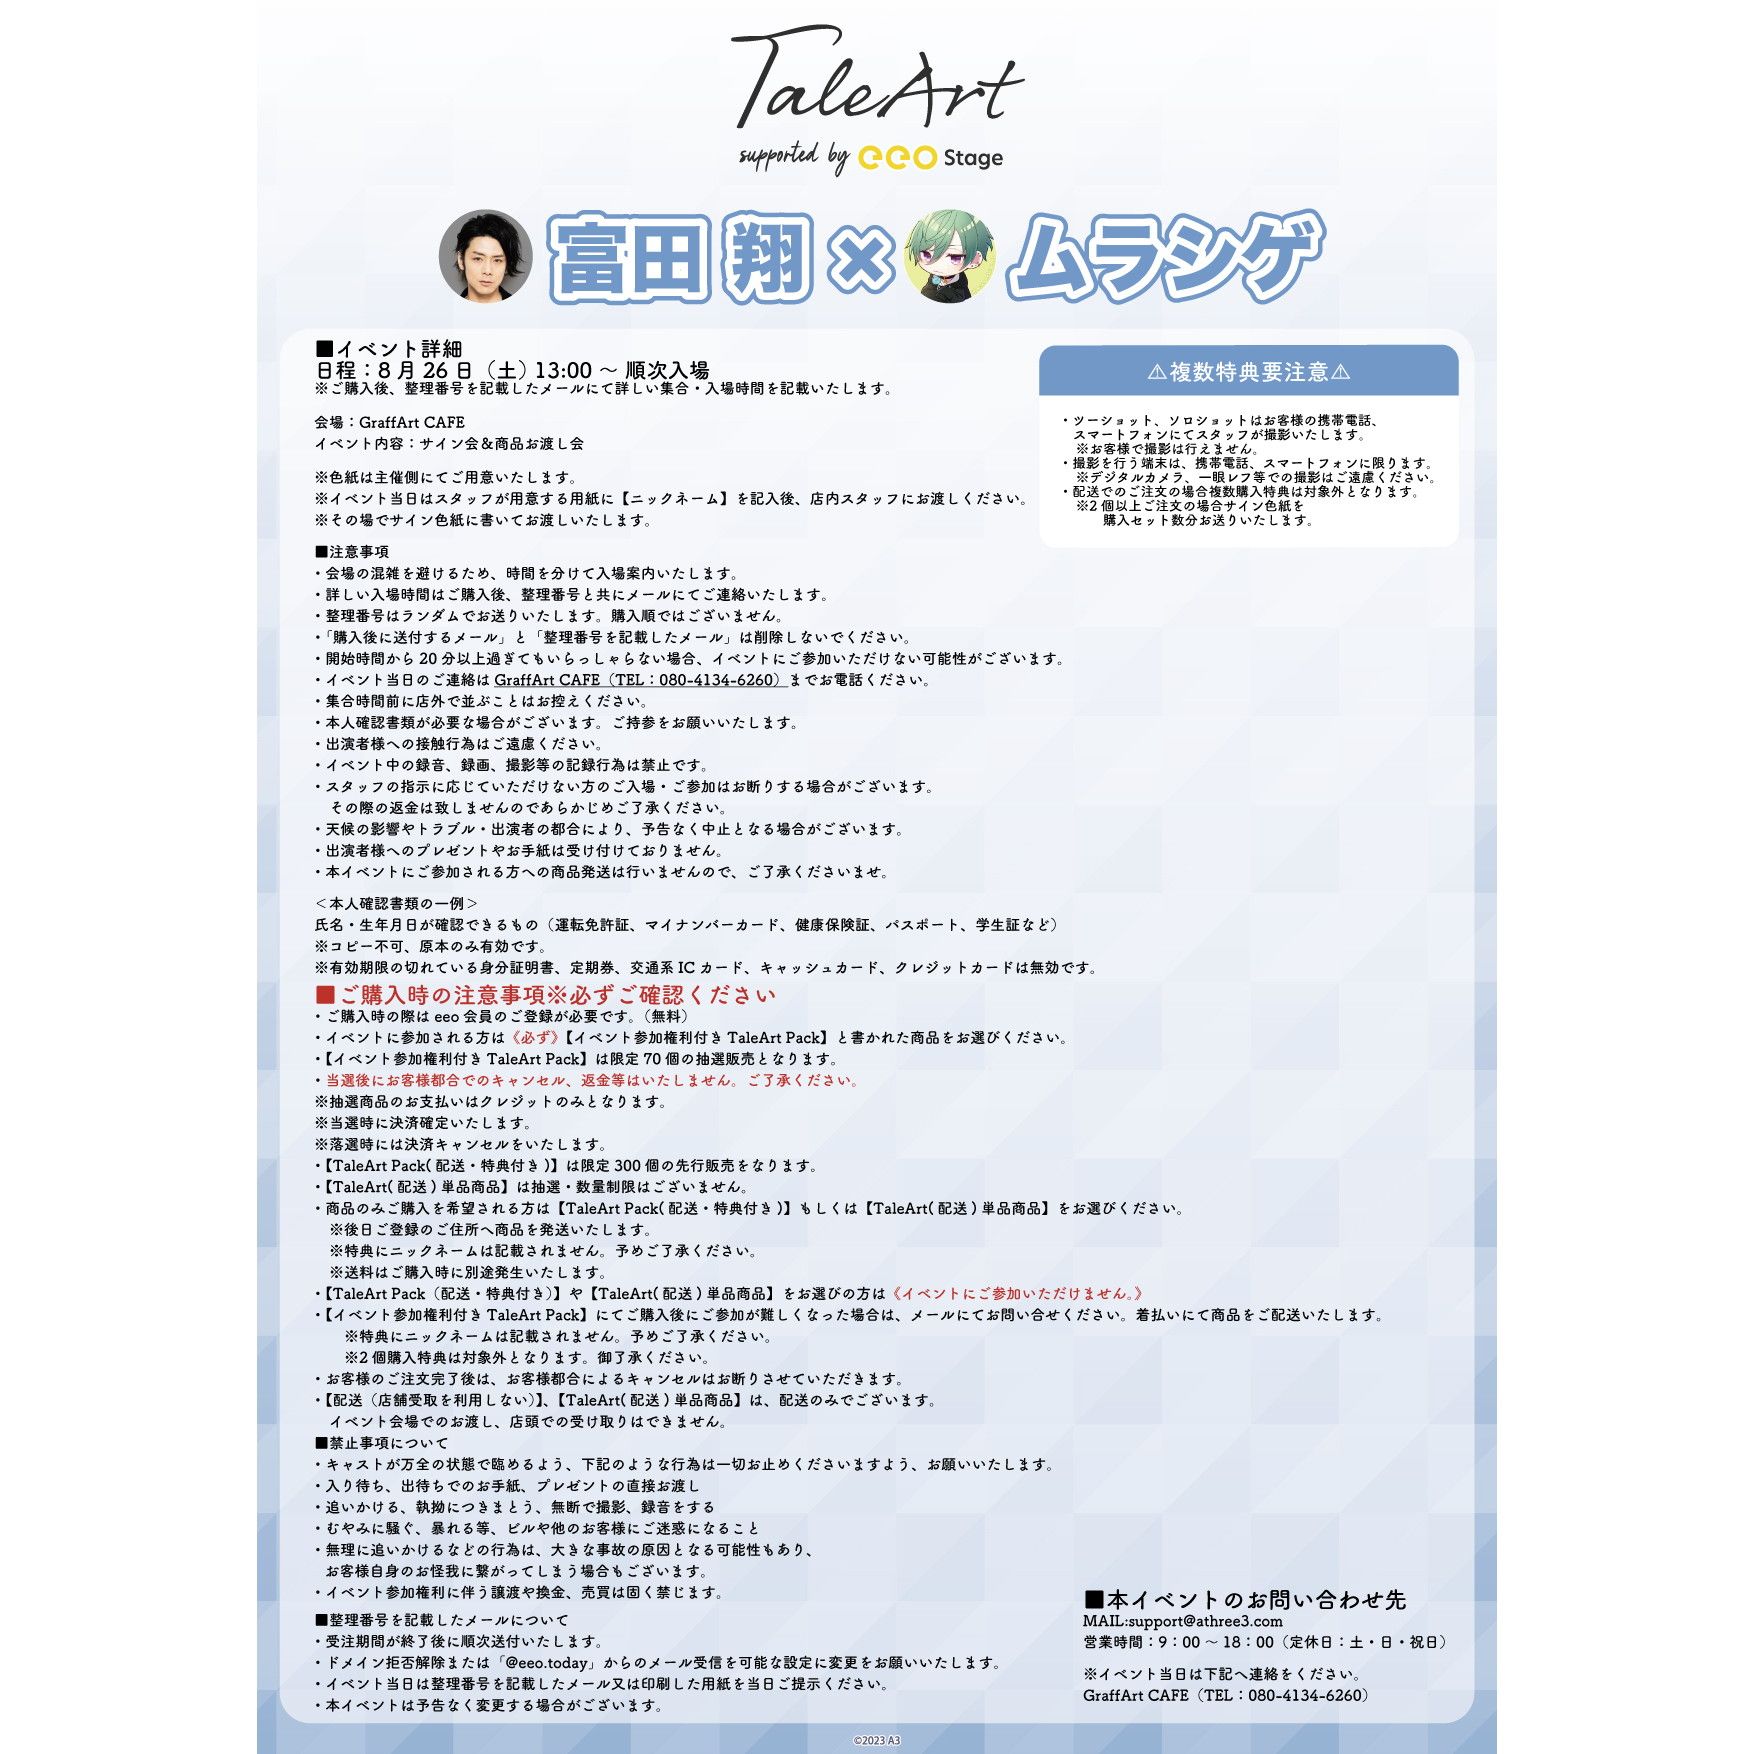 【イベント付き・抽選】TaleArt Pack「TaleArt」01/富田 翔×ムラシゲ